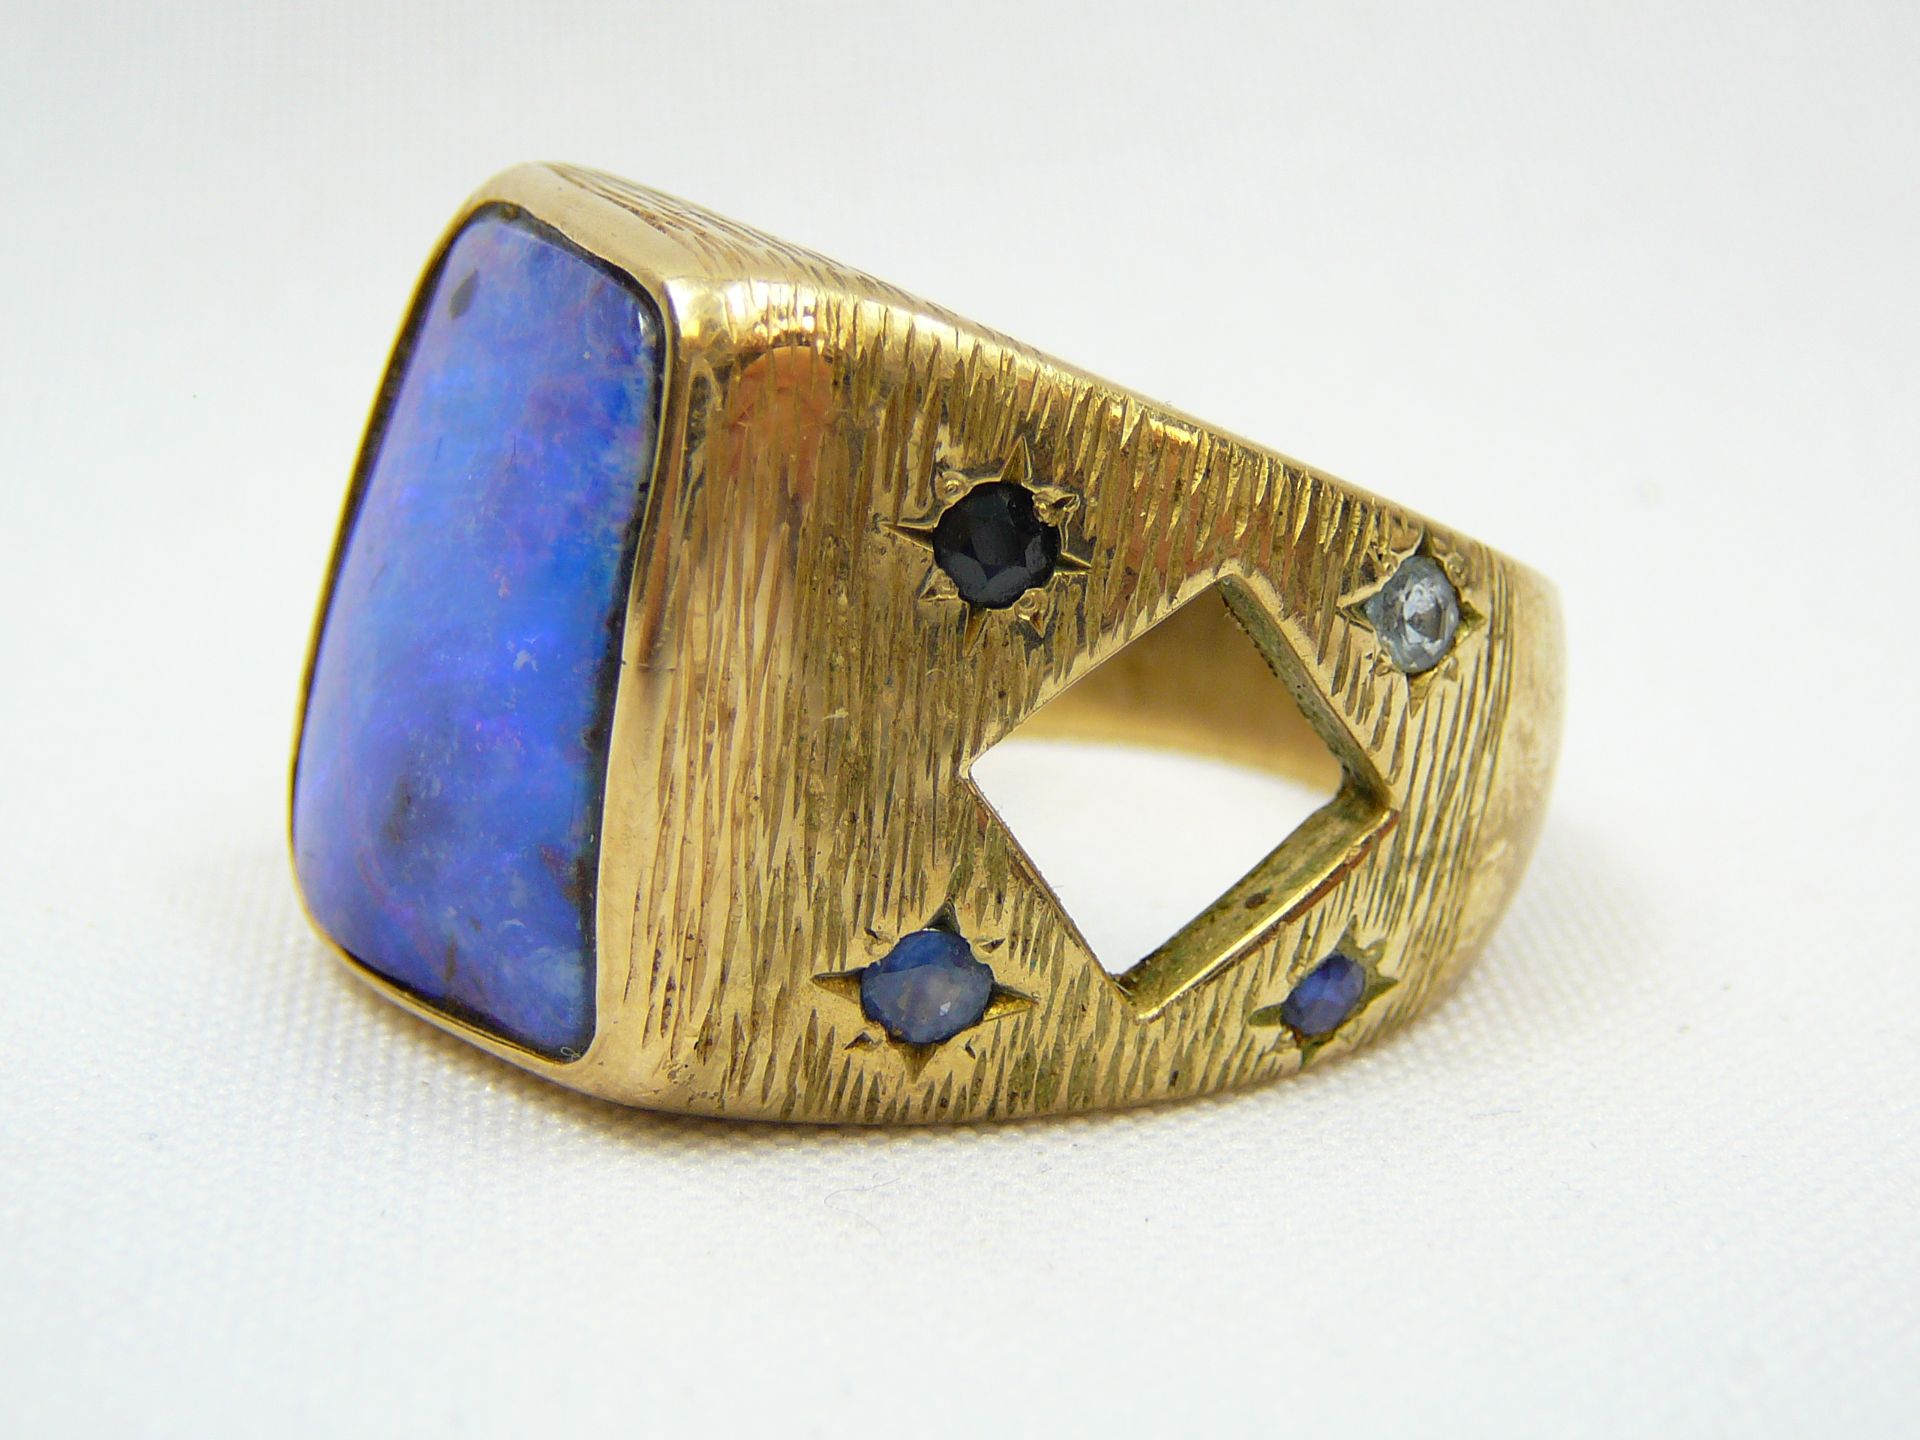 9 Carat Gold Lapis Lazuli Huge Ring - Image 3 of 7